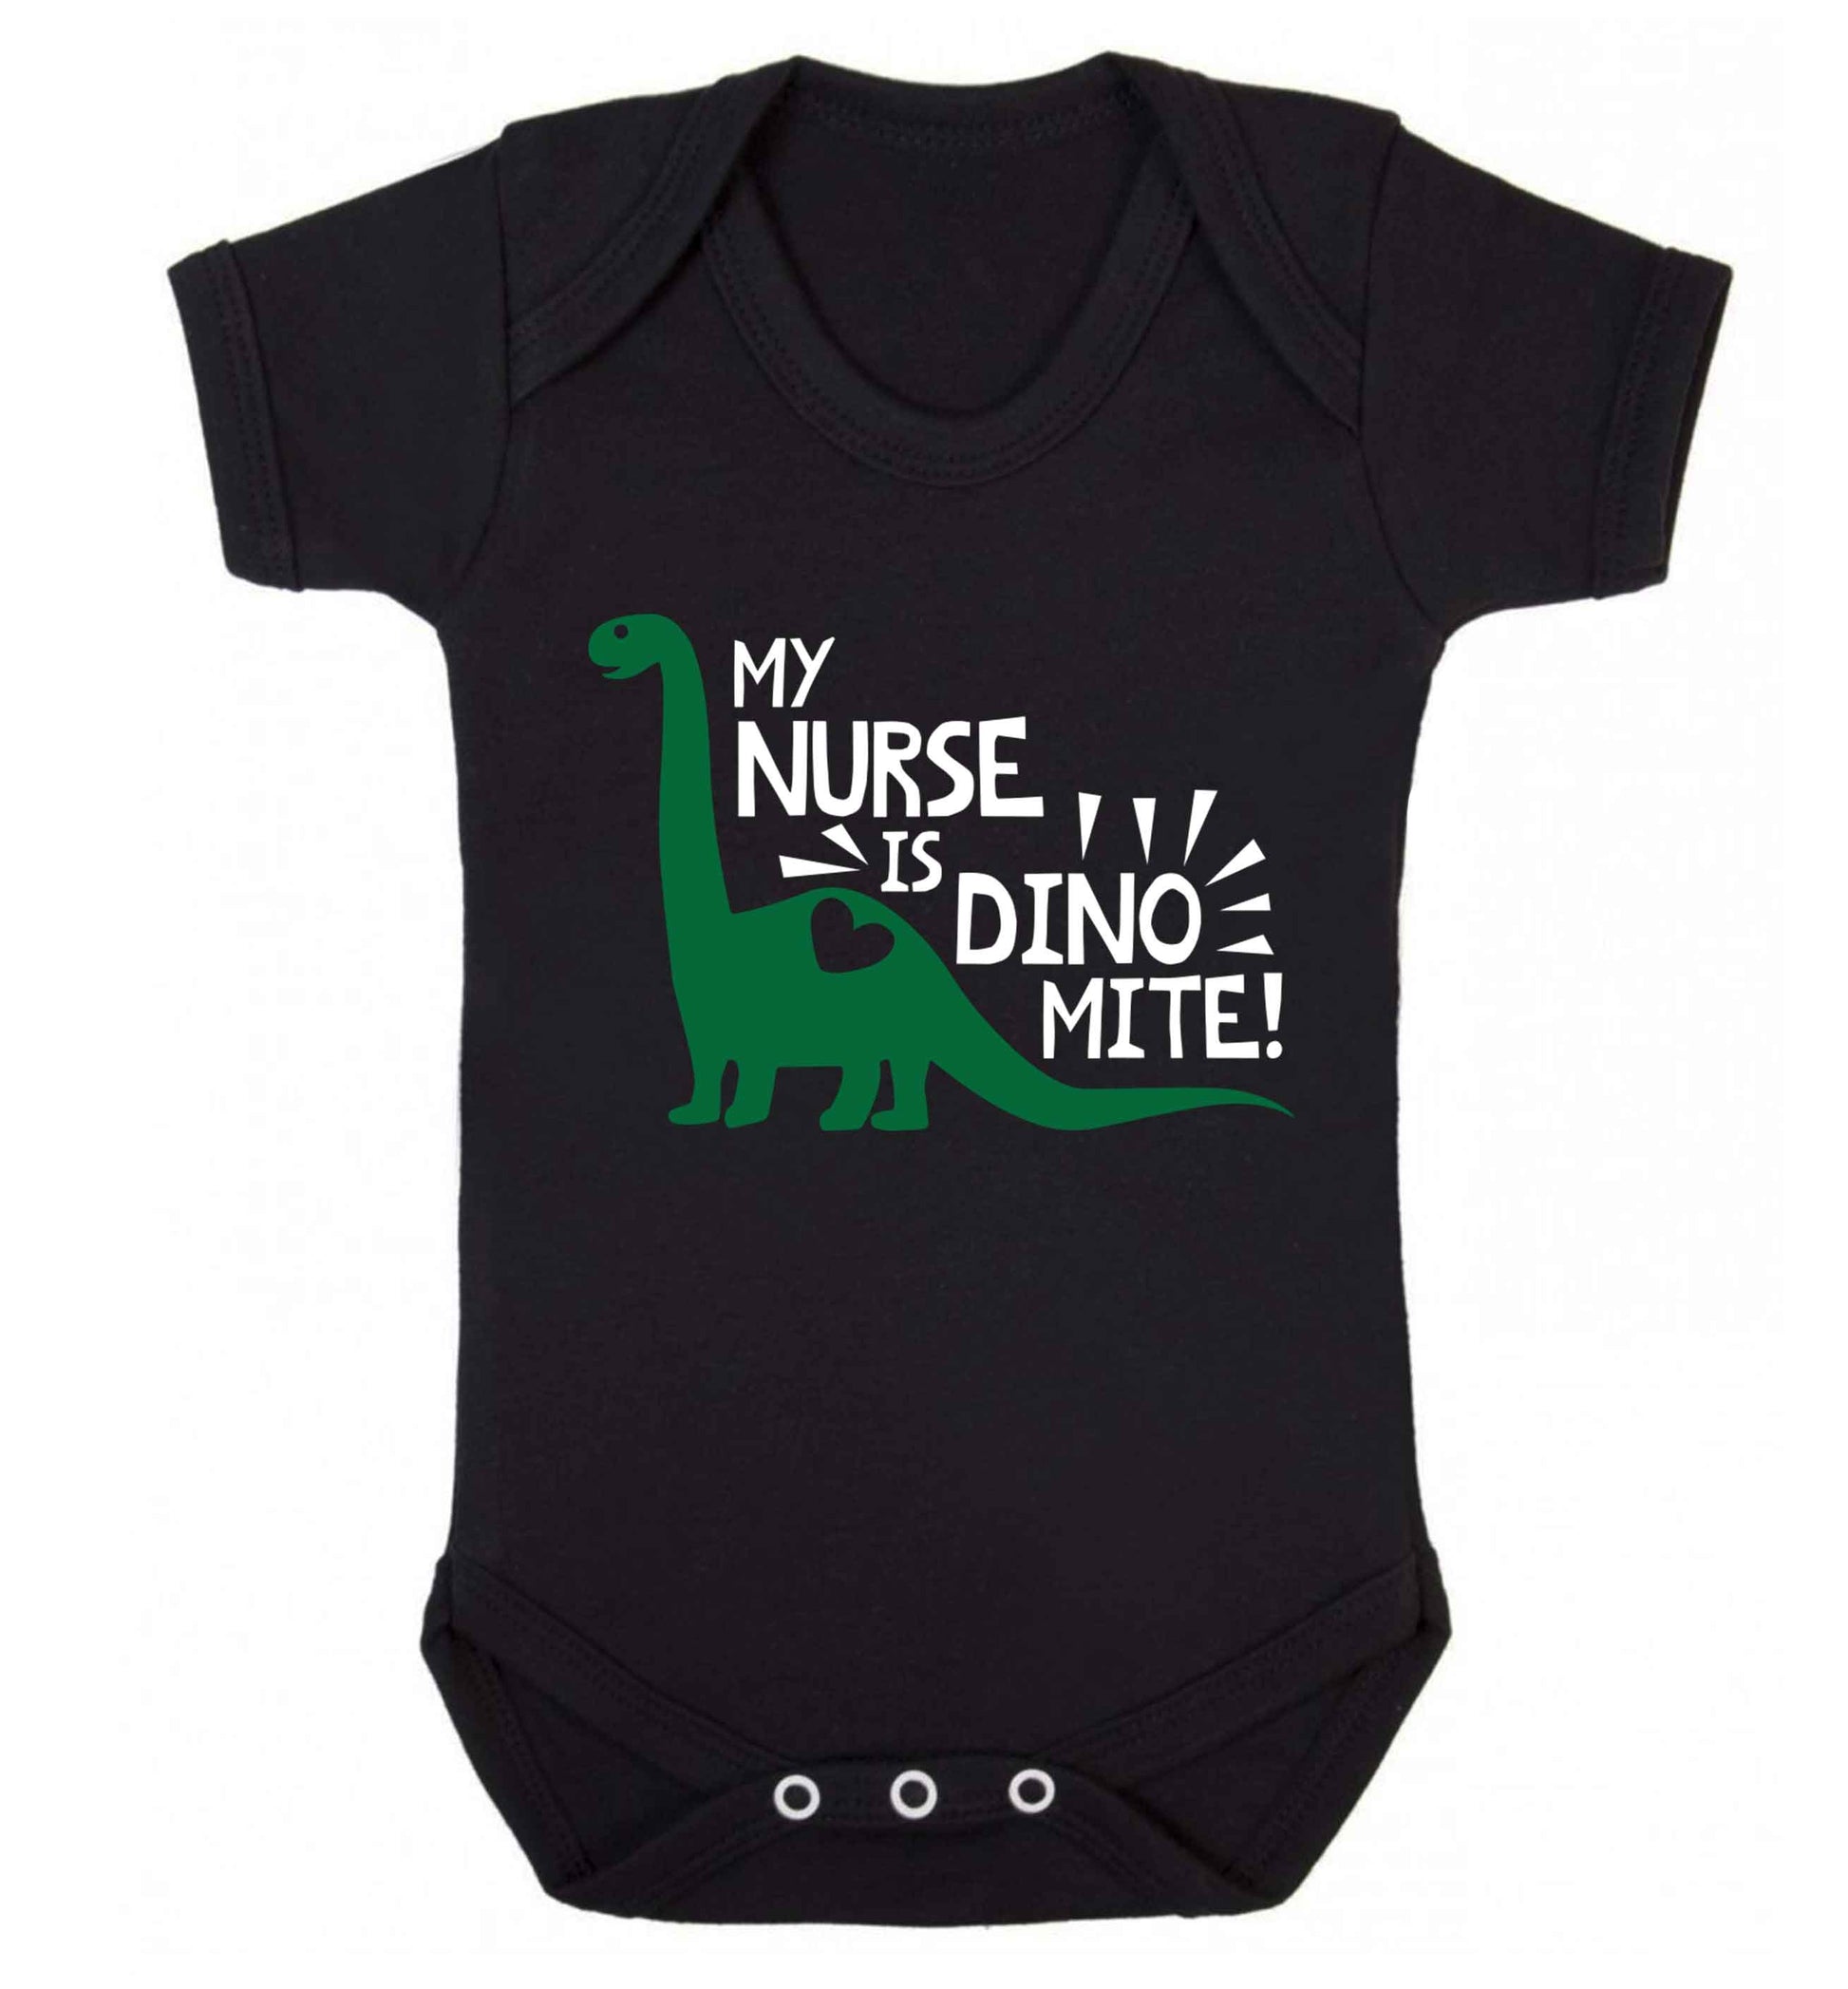 My nurse is dinomite! Baby Vest black 18-24 months